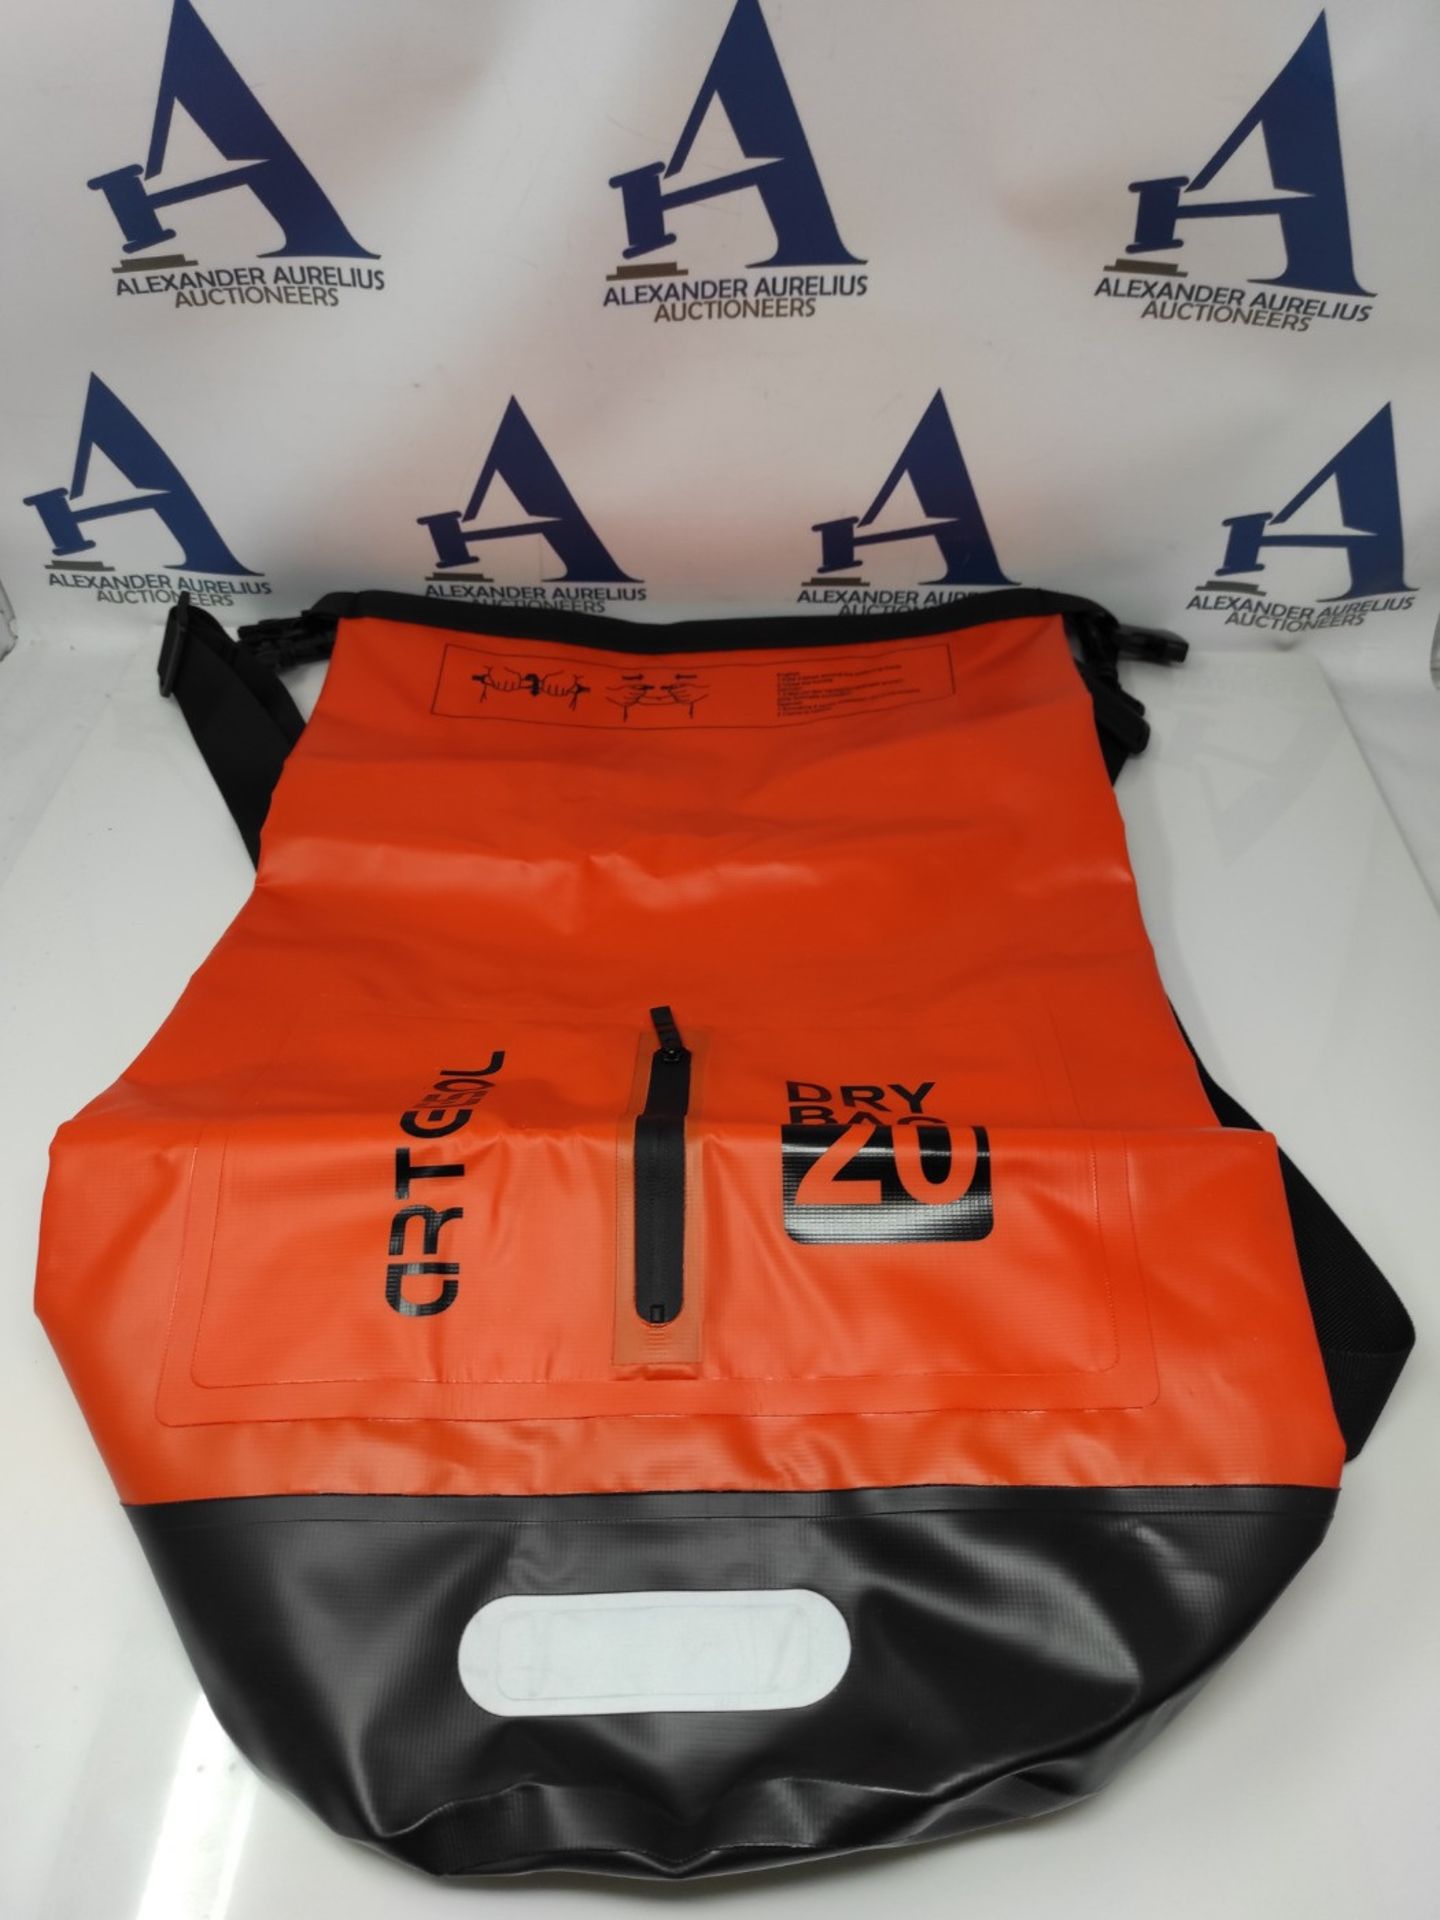 Blackace Arteesol Dry Bag - 5L 10L 20L 30L Waterproof Dry Bag/Sack Waterproof Bag with